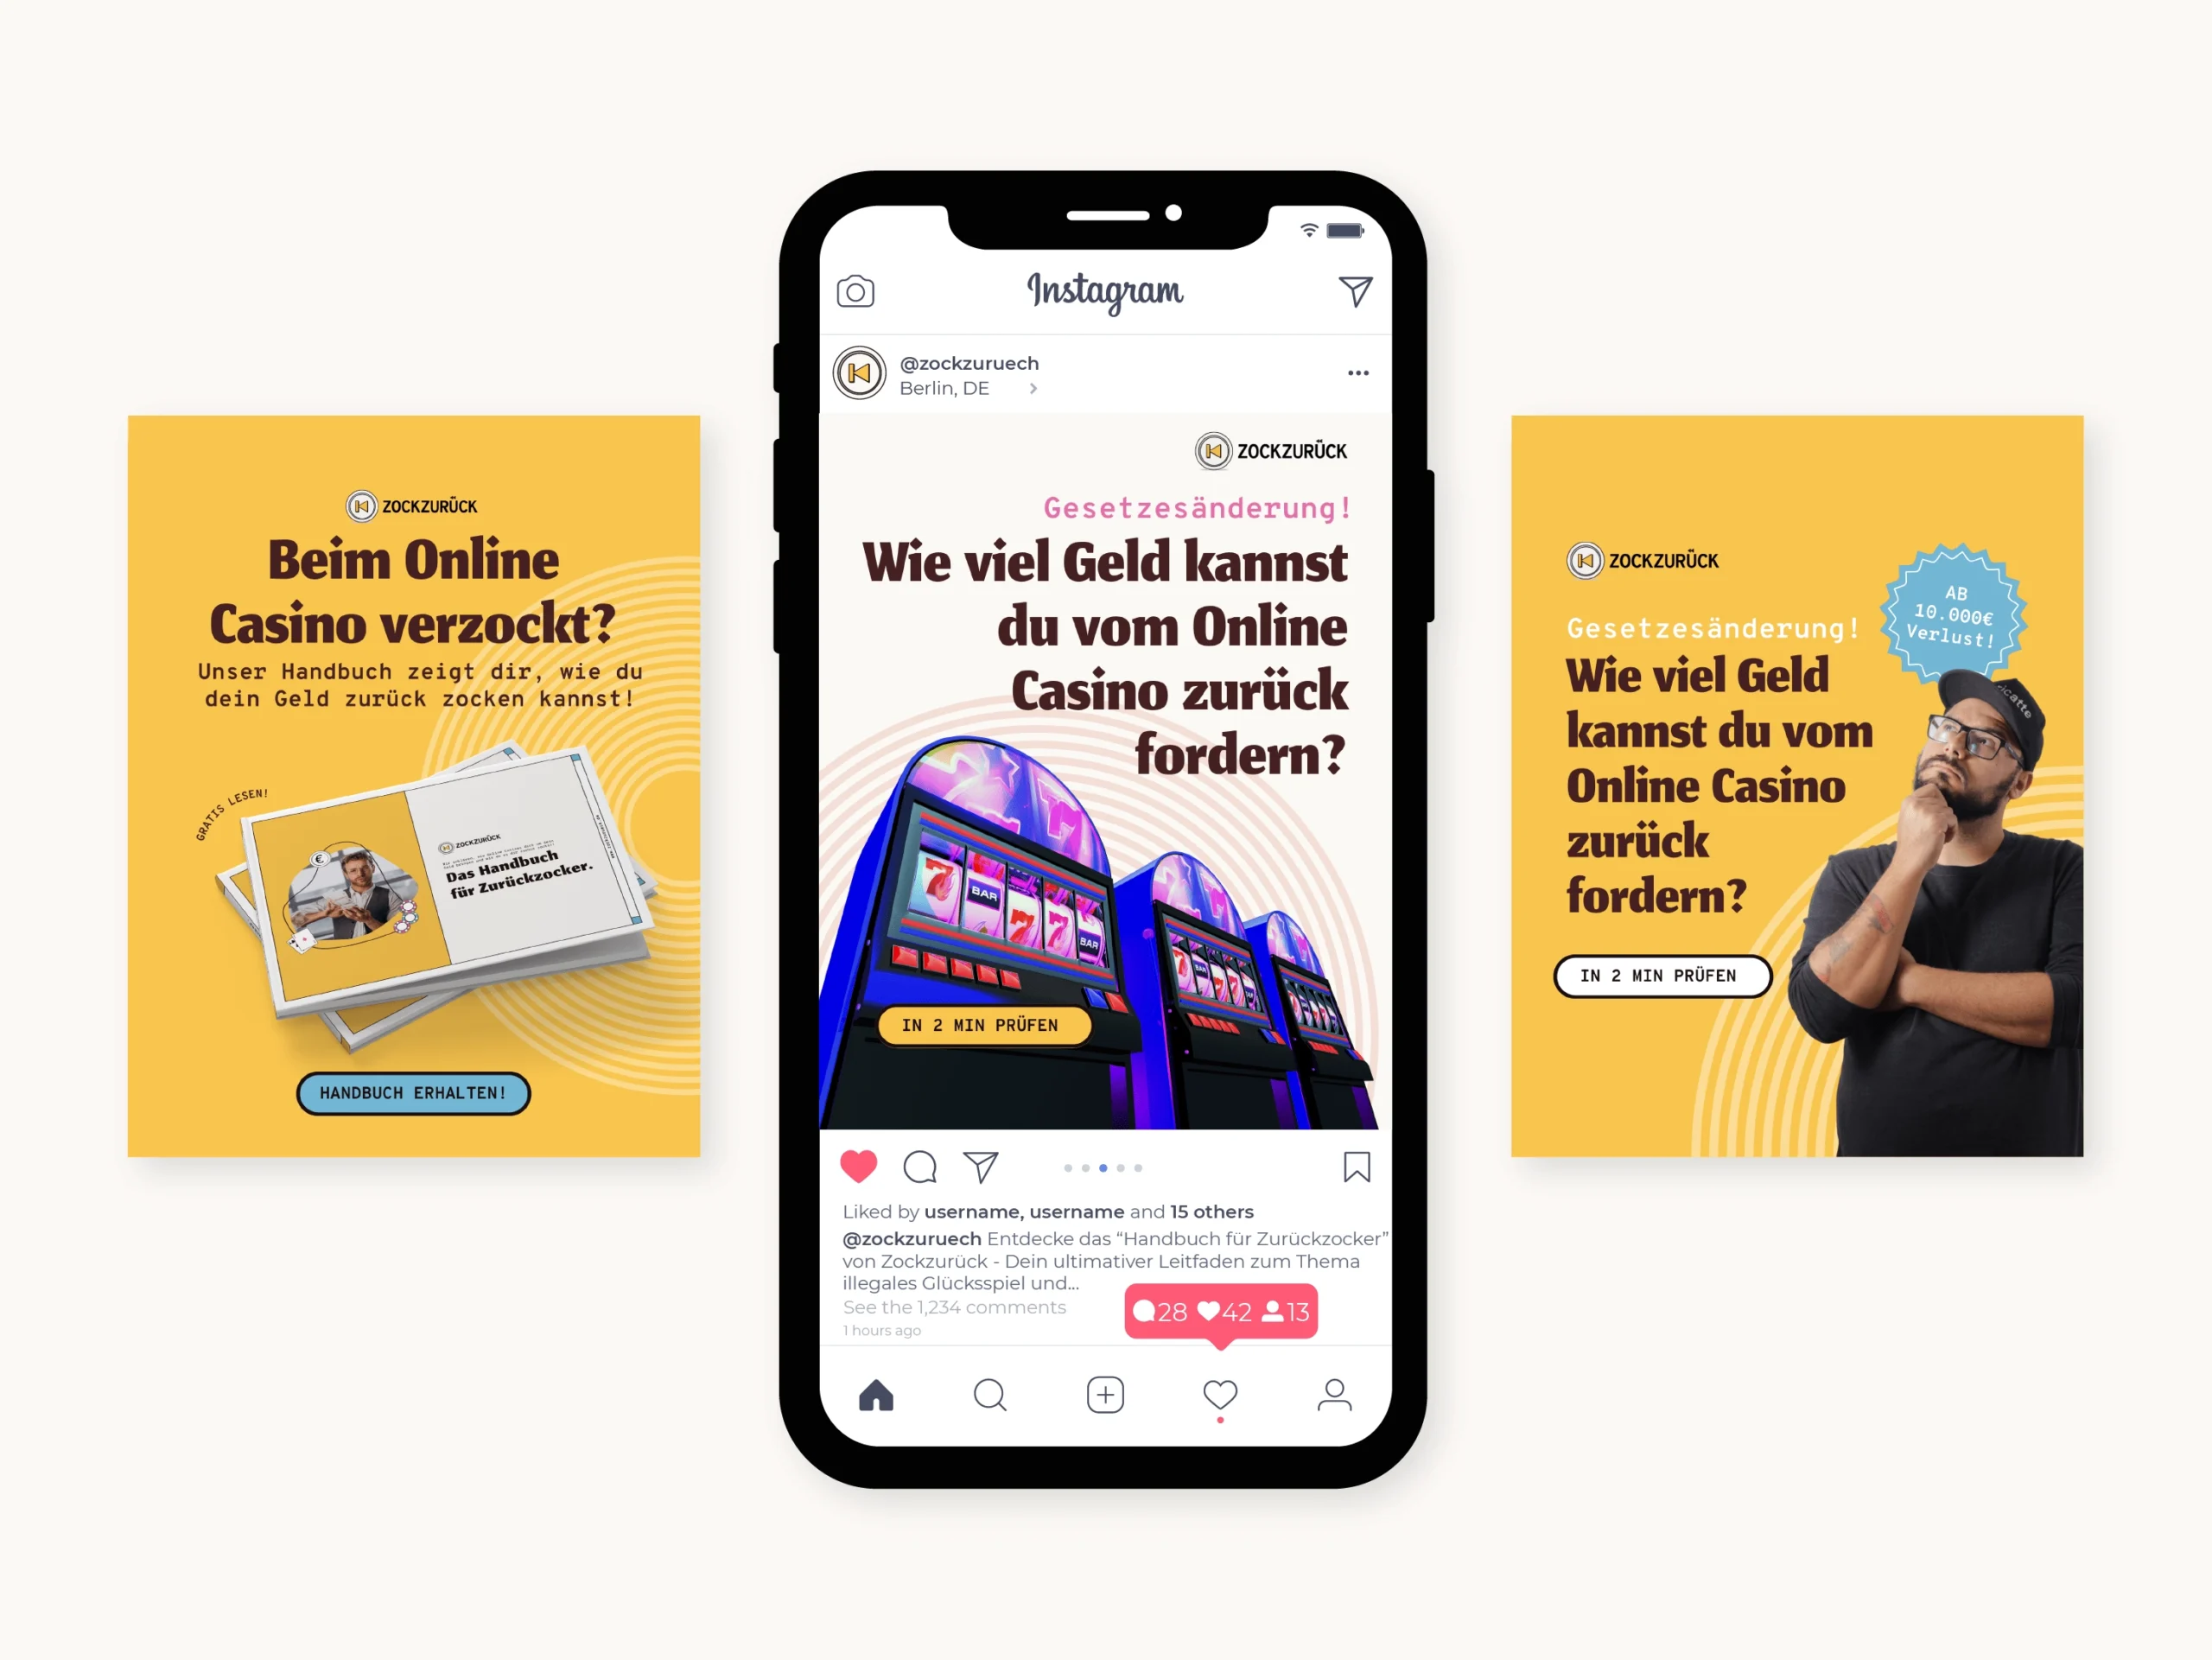 Instagram und Facebook Anzeigen, erstellt von Komsulting Marketing Beratung im Branding von der Anwalts-Service Zockzurück aus Berlin